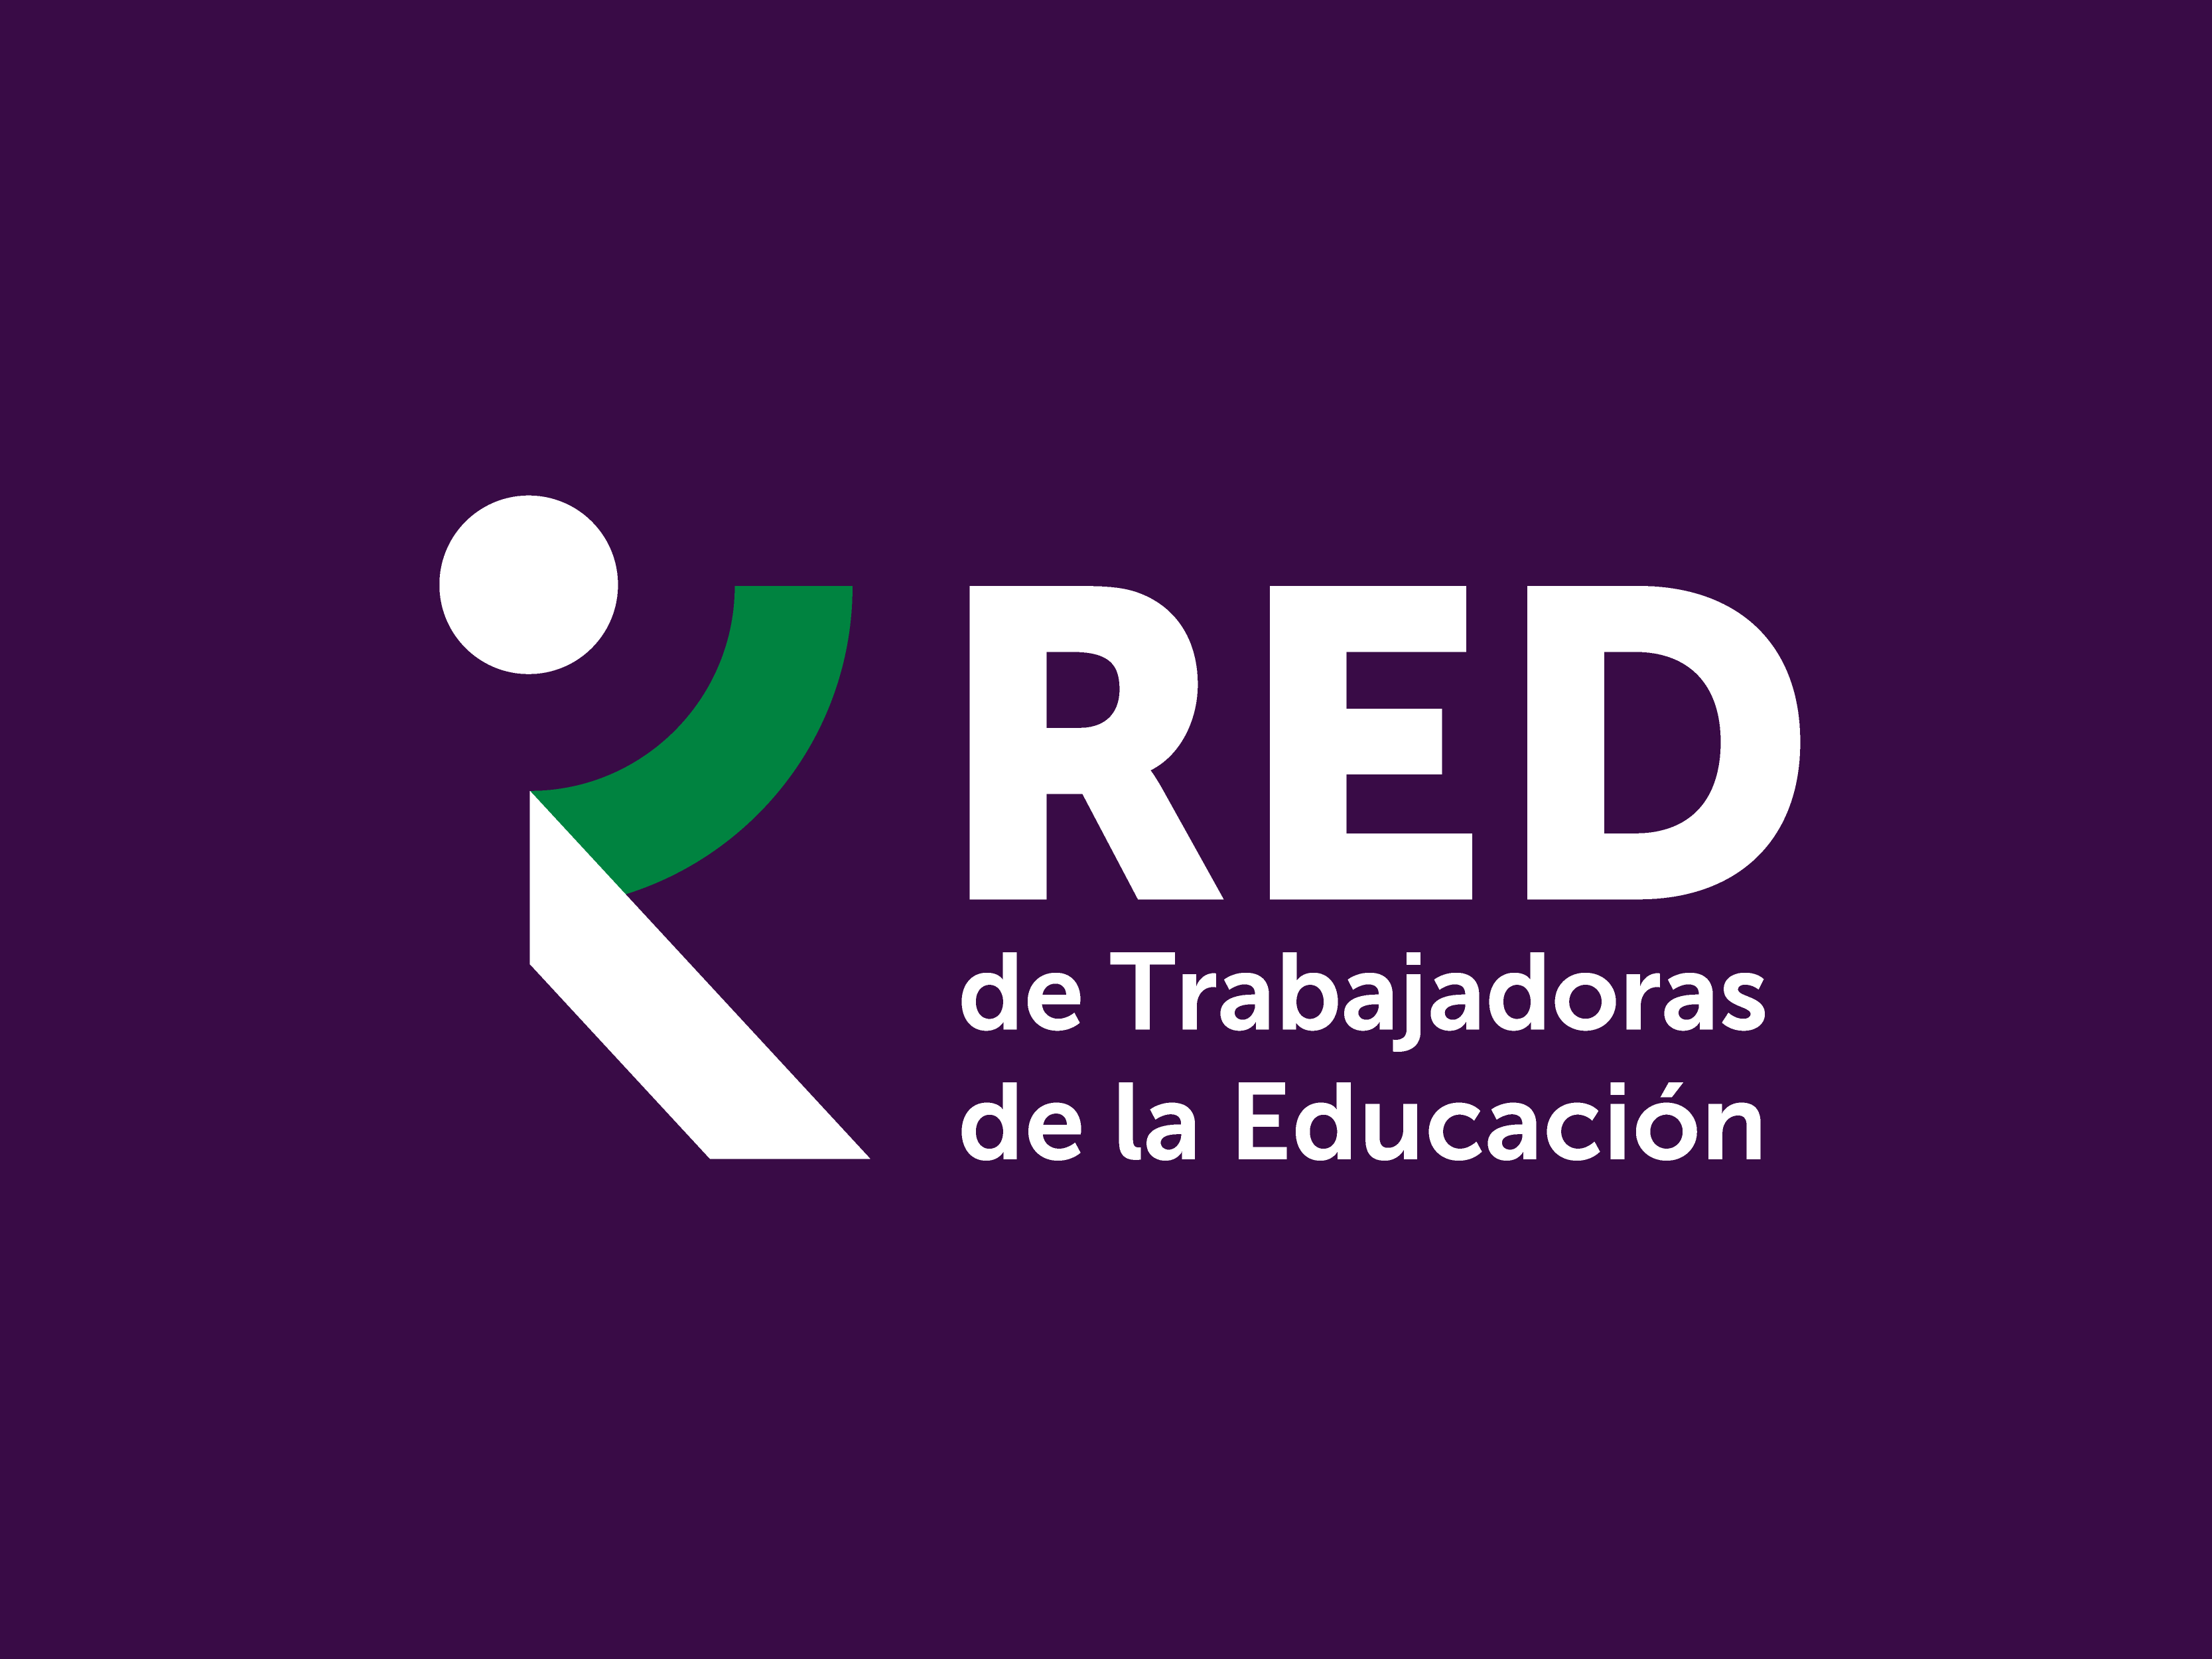 RED de Trabajadoras de la Educación de la IEAL renueva su imagen 